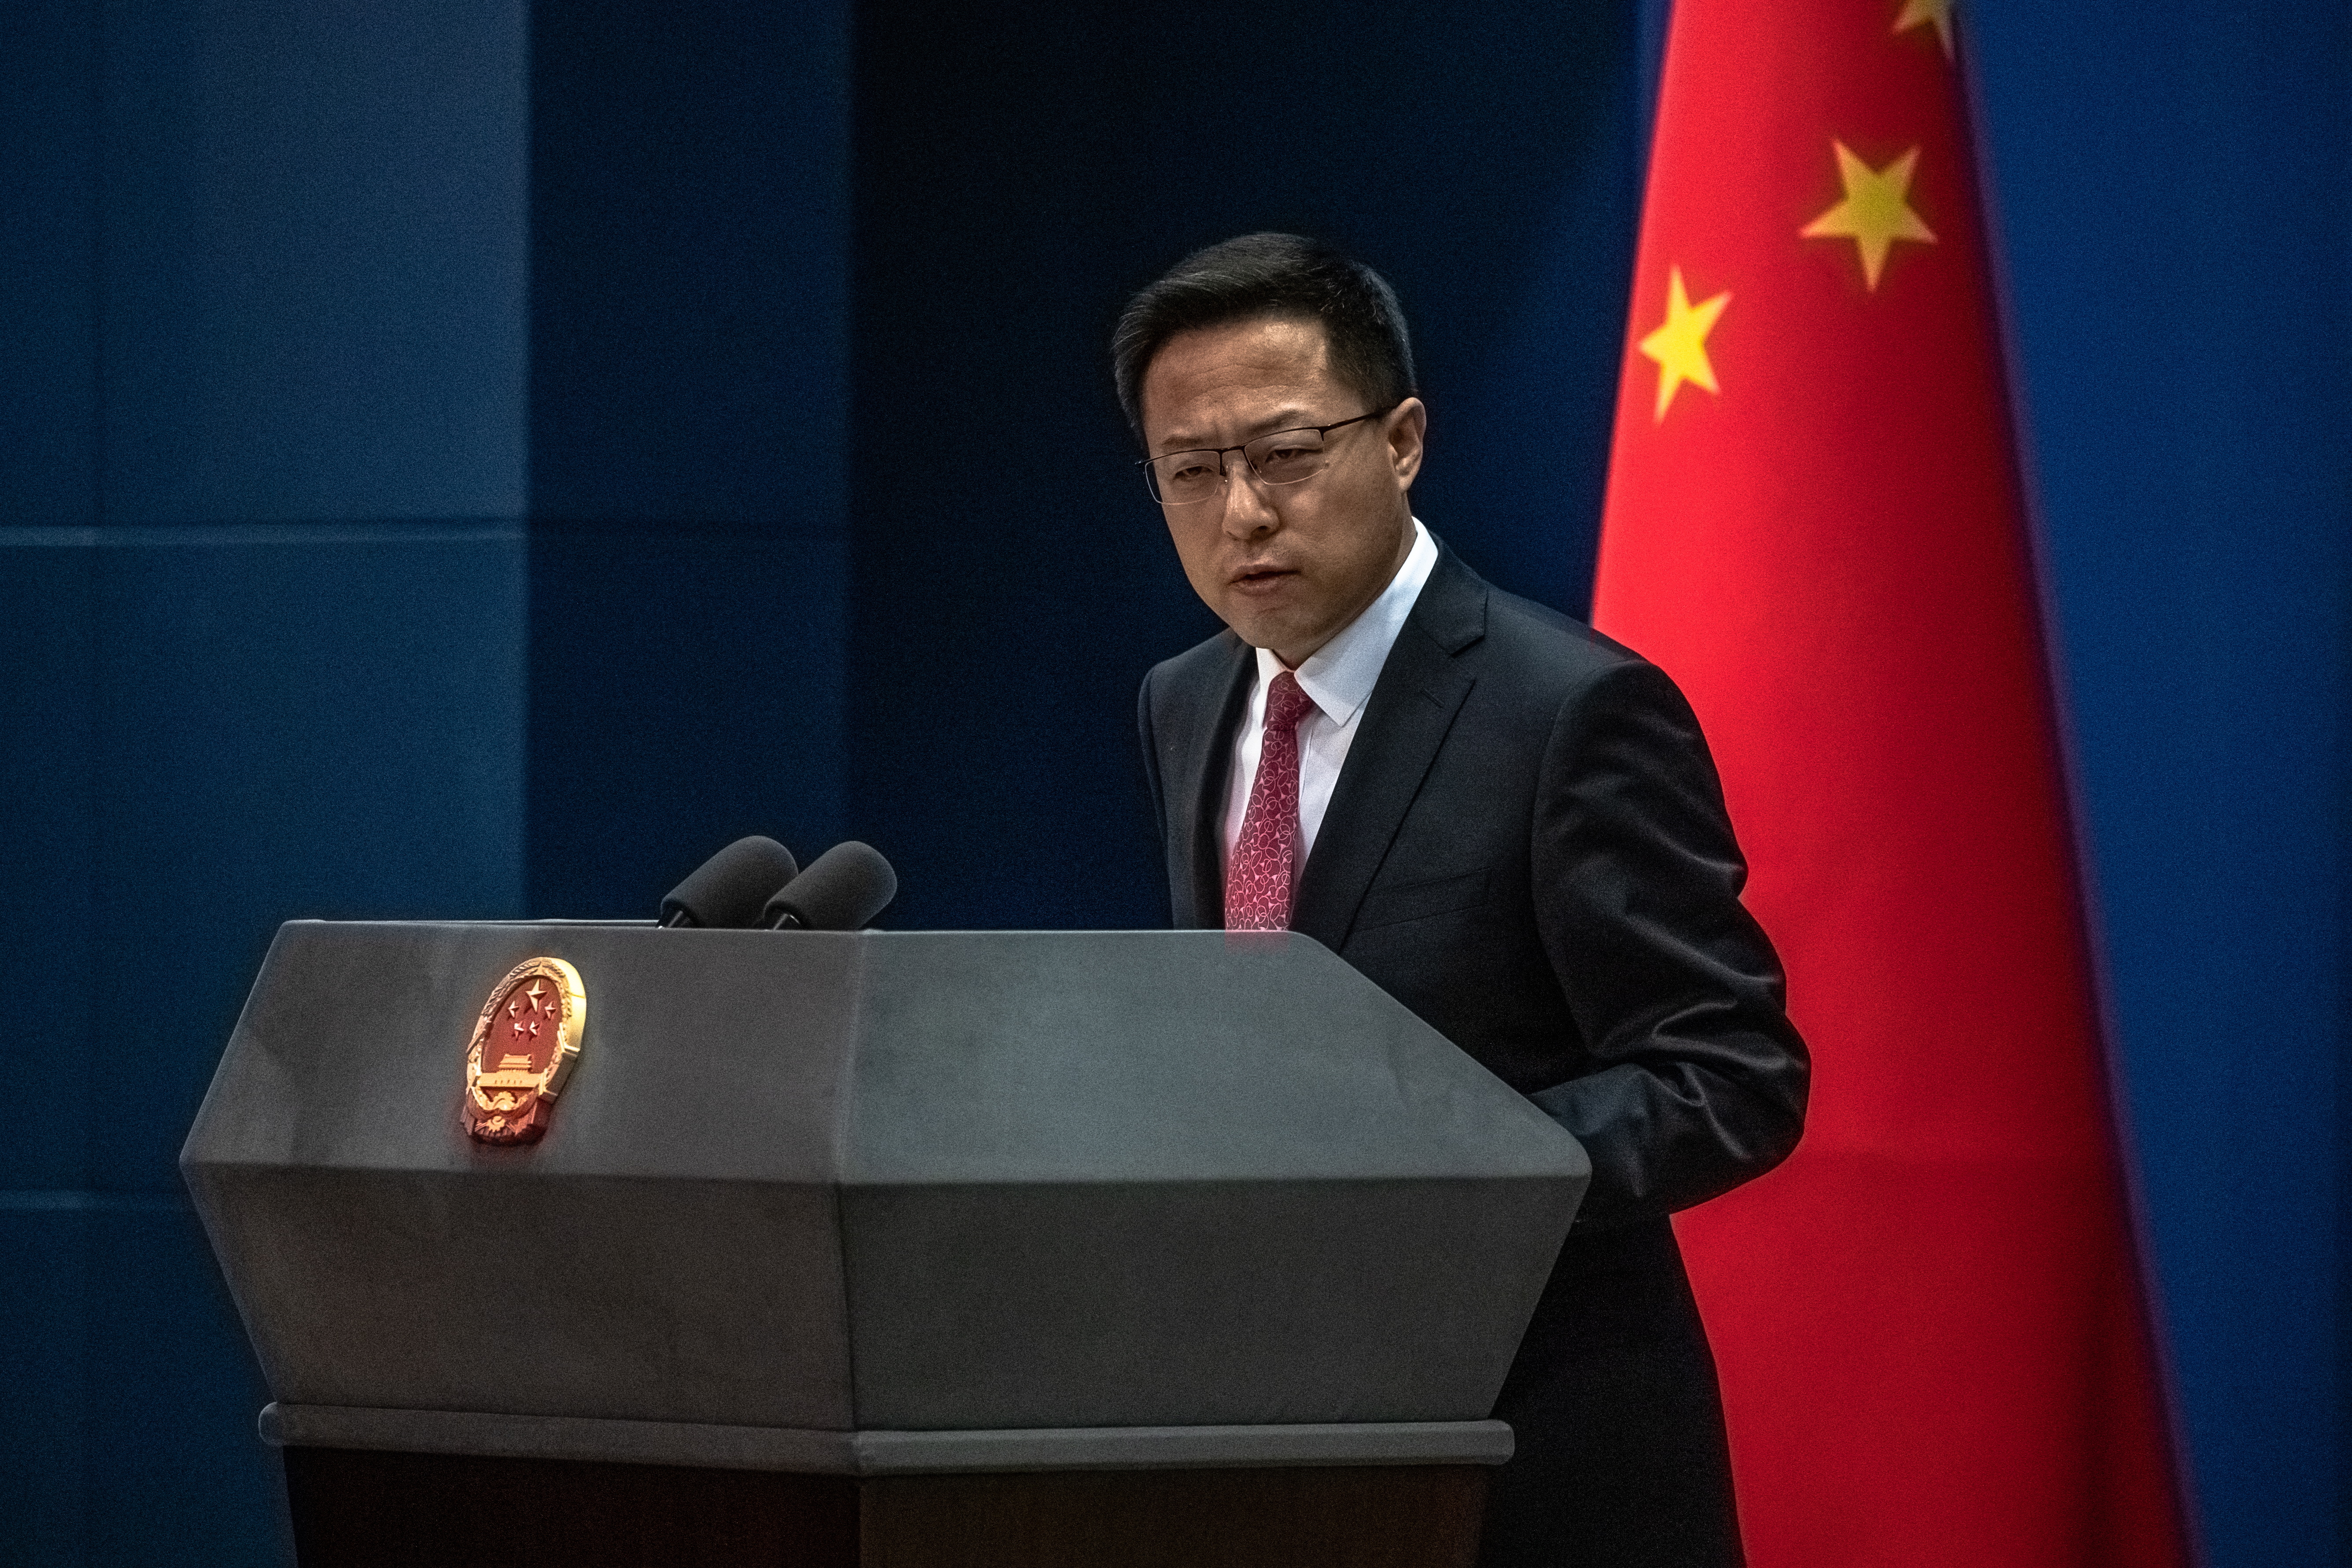 El portavoz del Ministerio de Exteriores Zhao Lijian, en una imagen de archivo (Foto: EFE)
